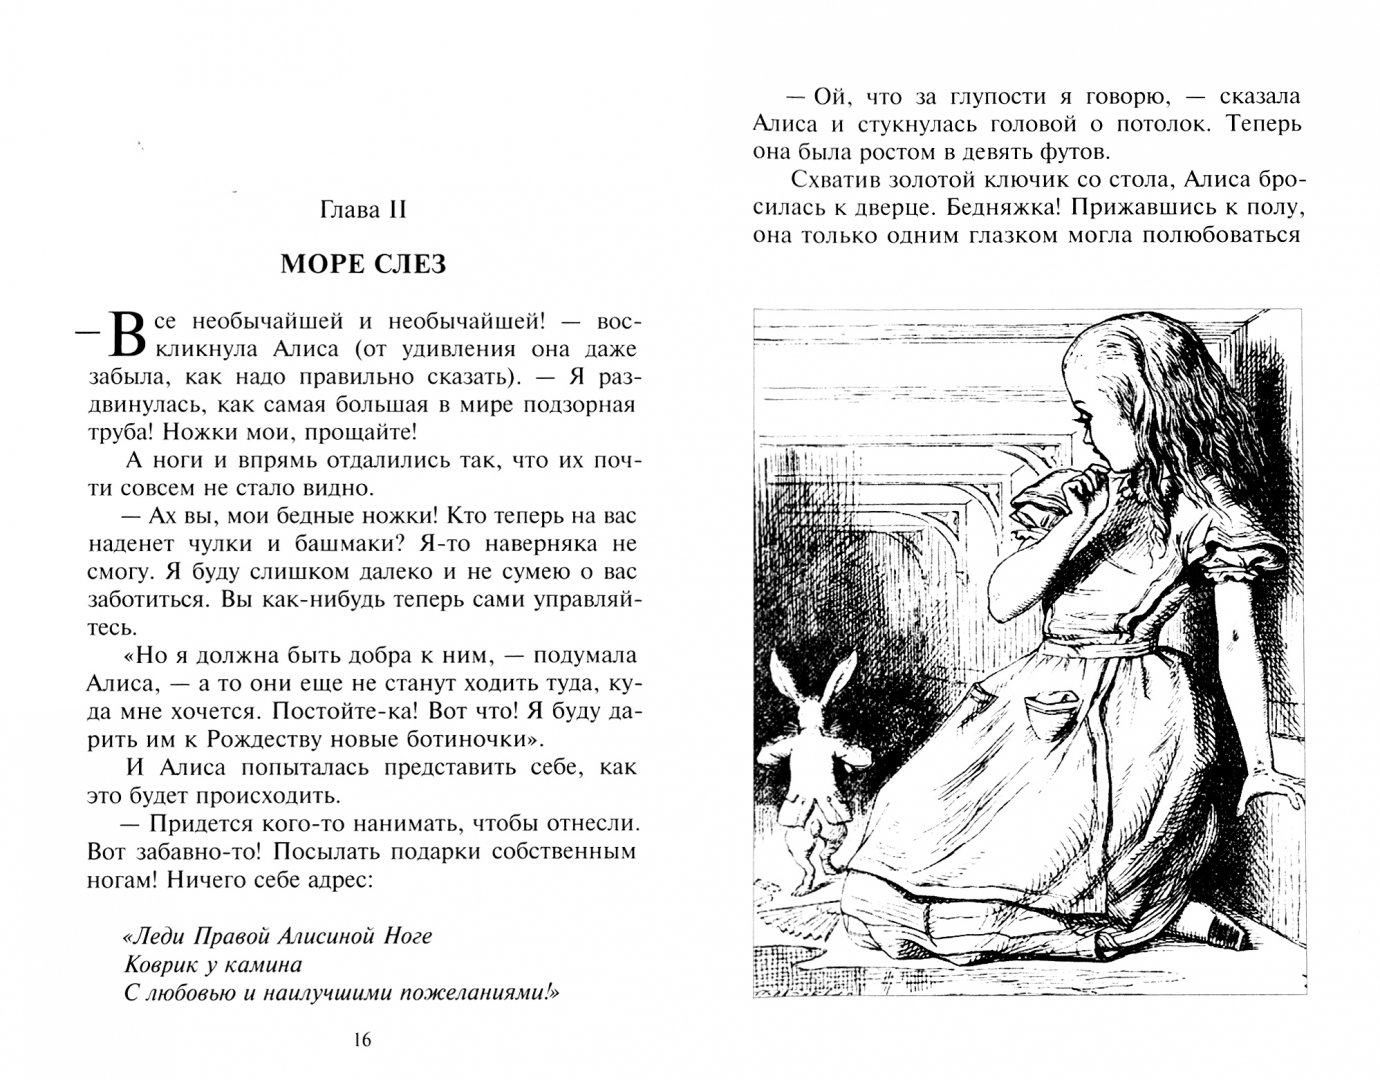 Алиса в стране чудес первая глава. Алиса в стране чудес страницы из книги. Алиса в стране чудес отрывок из книги. Кэрролл Льюис "Алиса в стране чудес". Читать Алиса в стране чудес на русском первая глава.